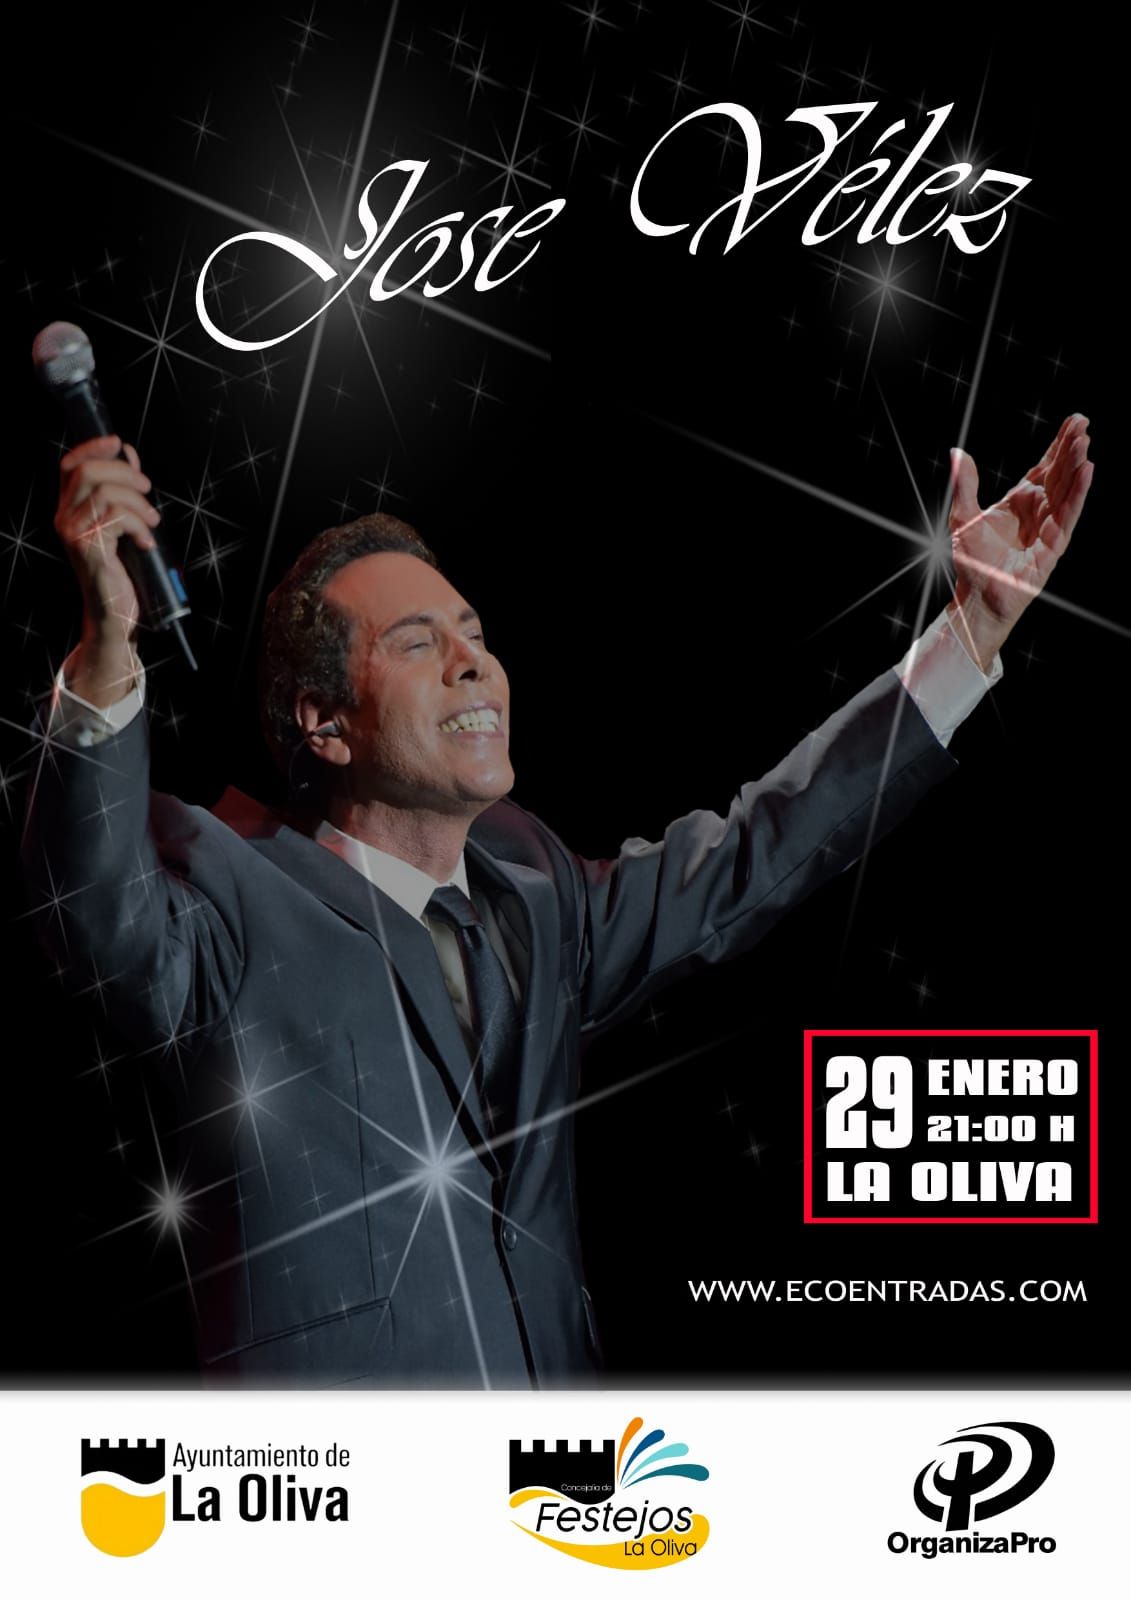 Cartel que anuncia el concierto de José Vélez en La Oliva.